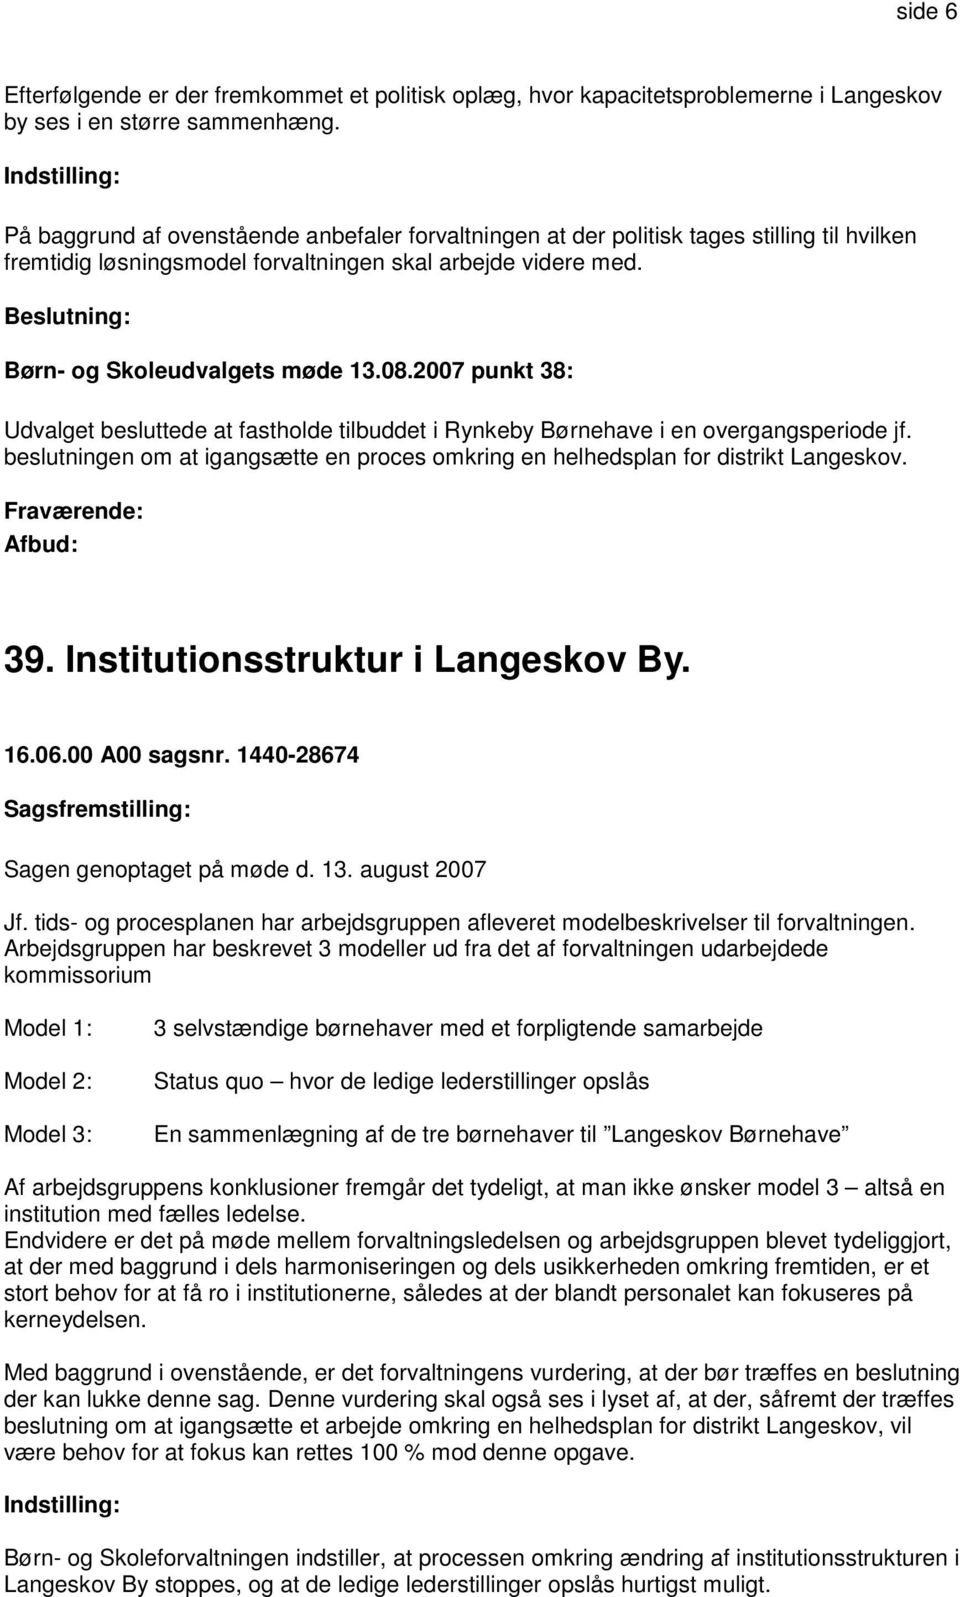 2007 punkt 38: Udvalget besluttede at fastholde tilbuddet i Rynkeby Børnehave i en overgangsperiode jf. beslutningen om at igangsætte en proces omkring en helhedsplan for distrikt Langeskov. 39.